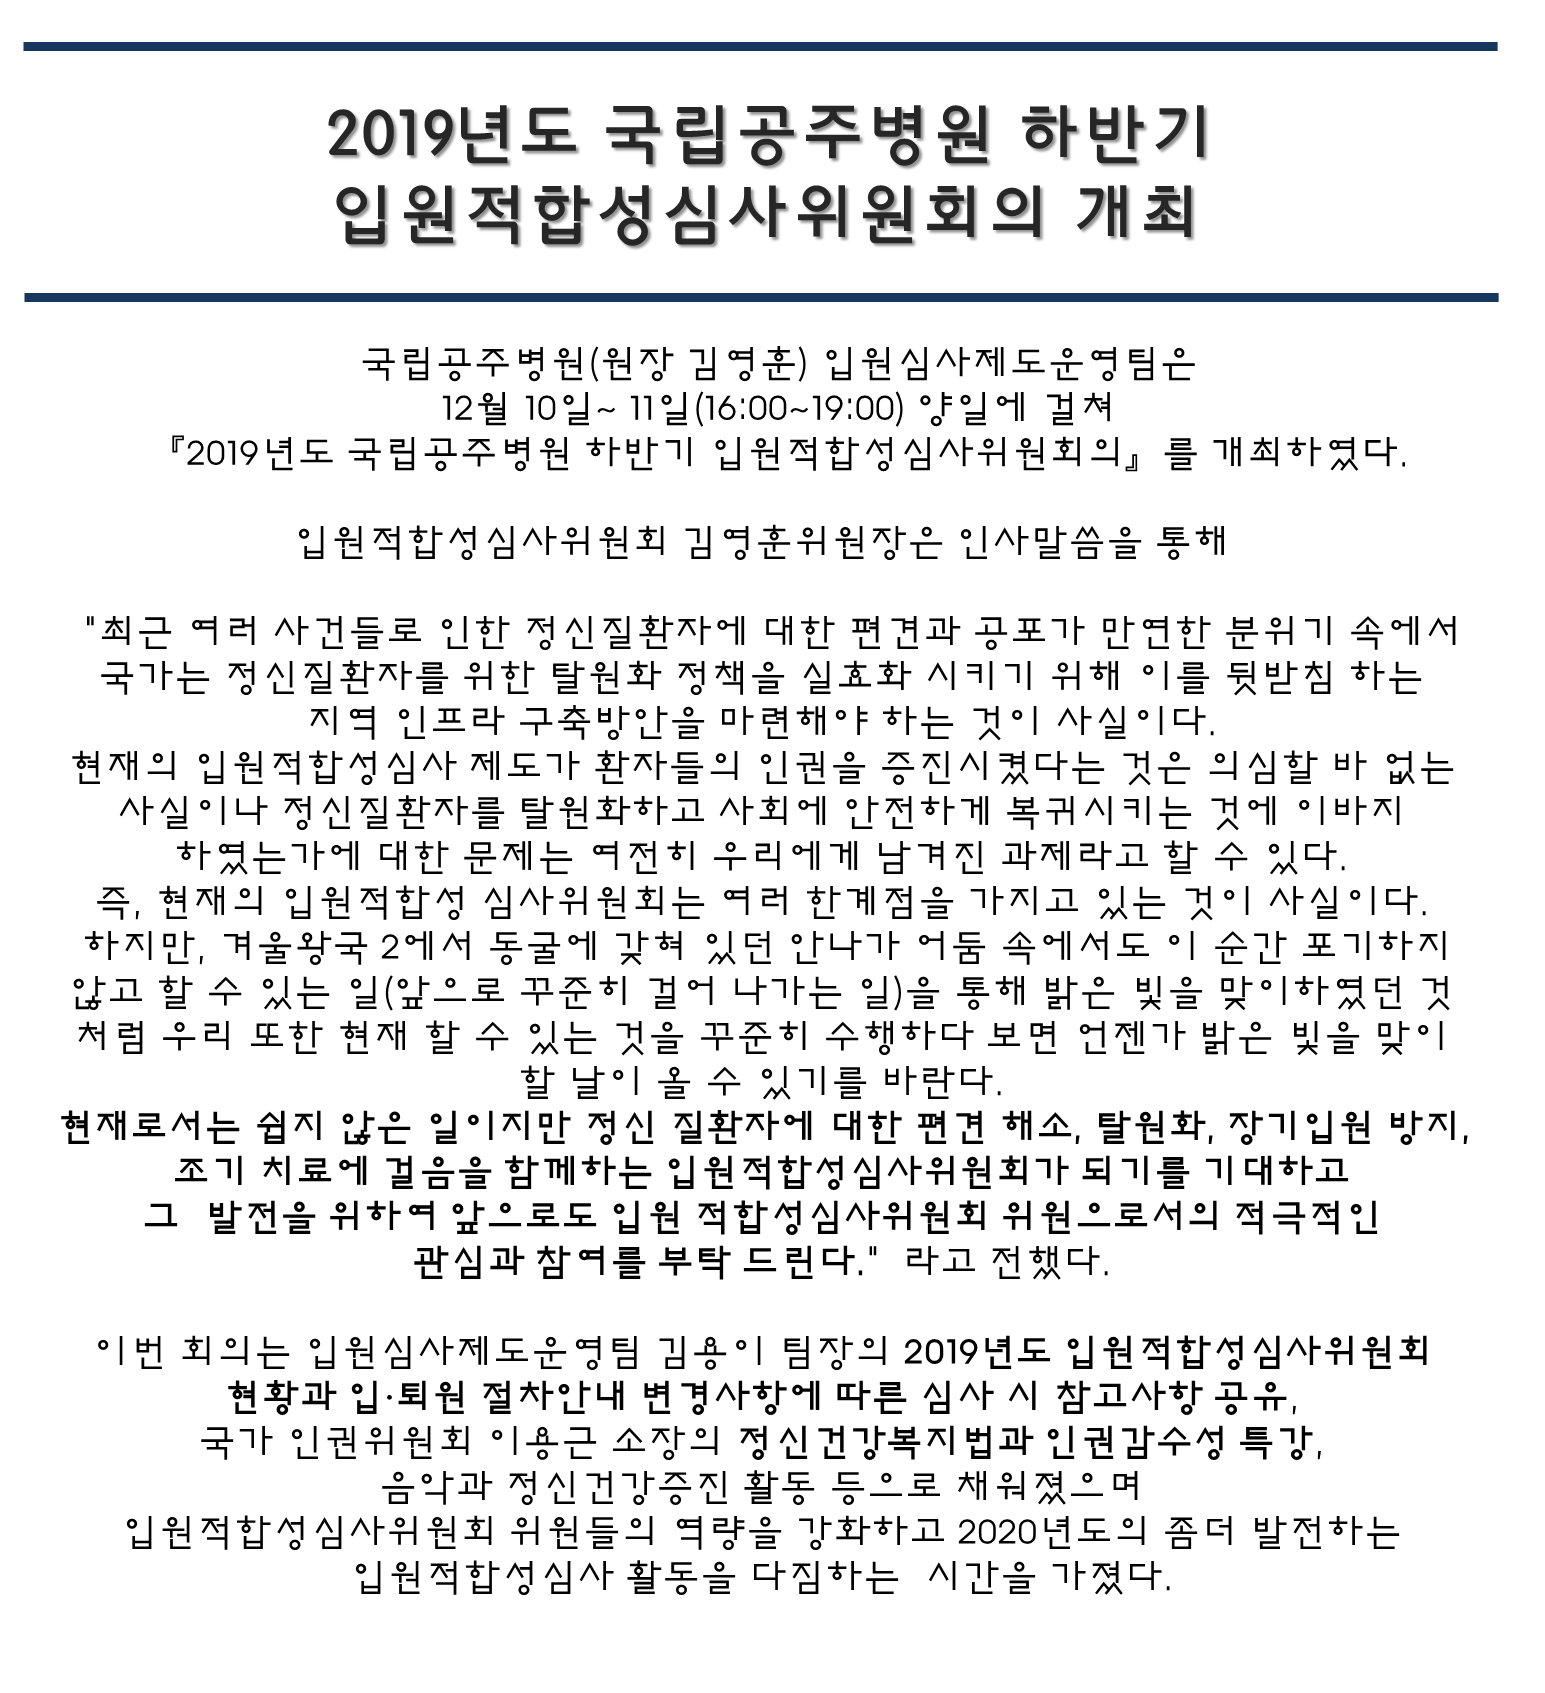 2019년도 하반기 국립공주병원 입원적합성심사위원회의 개최